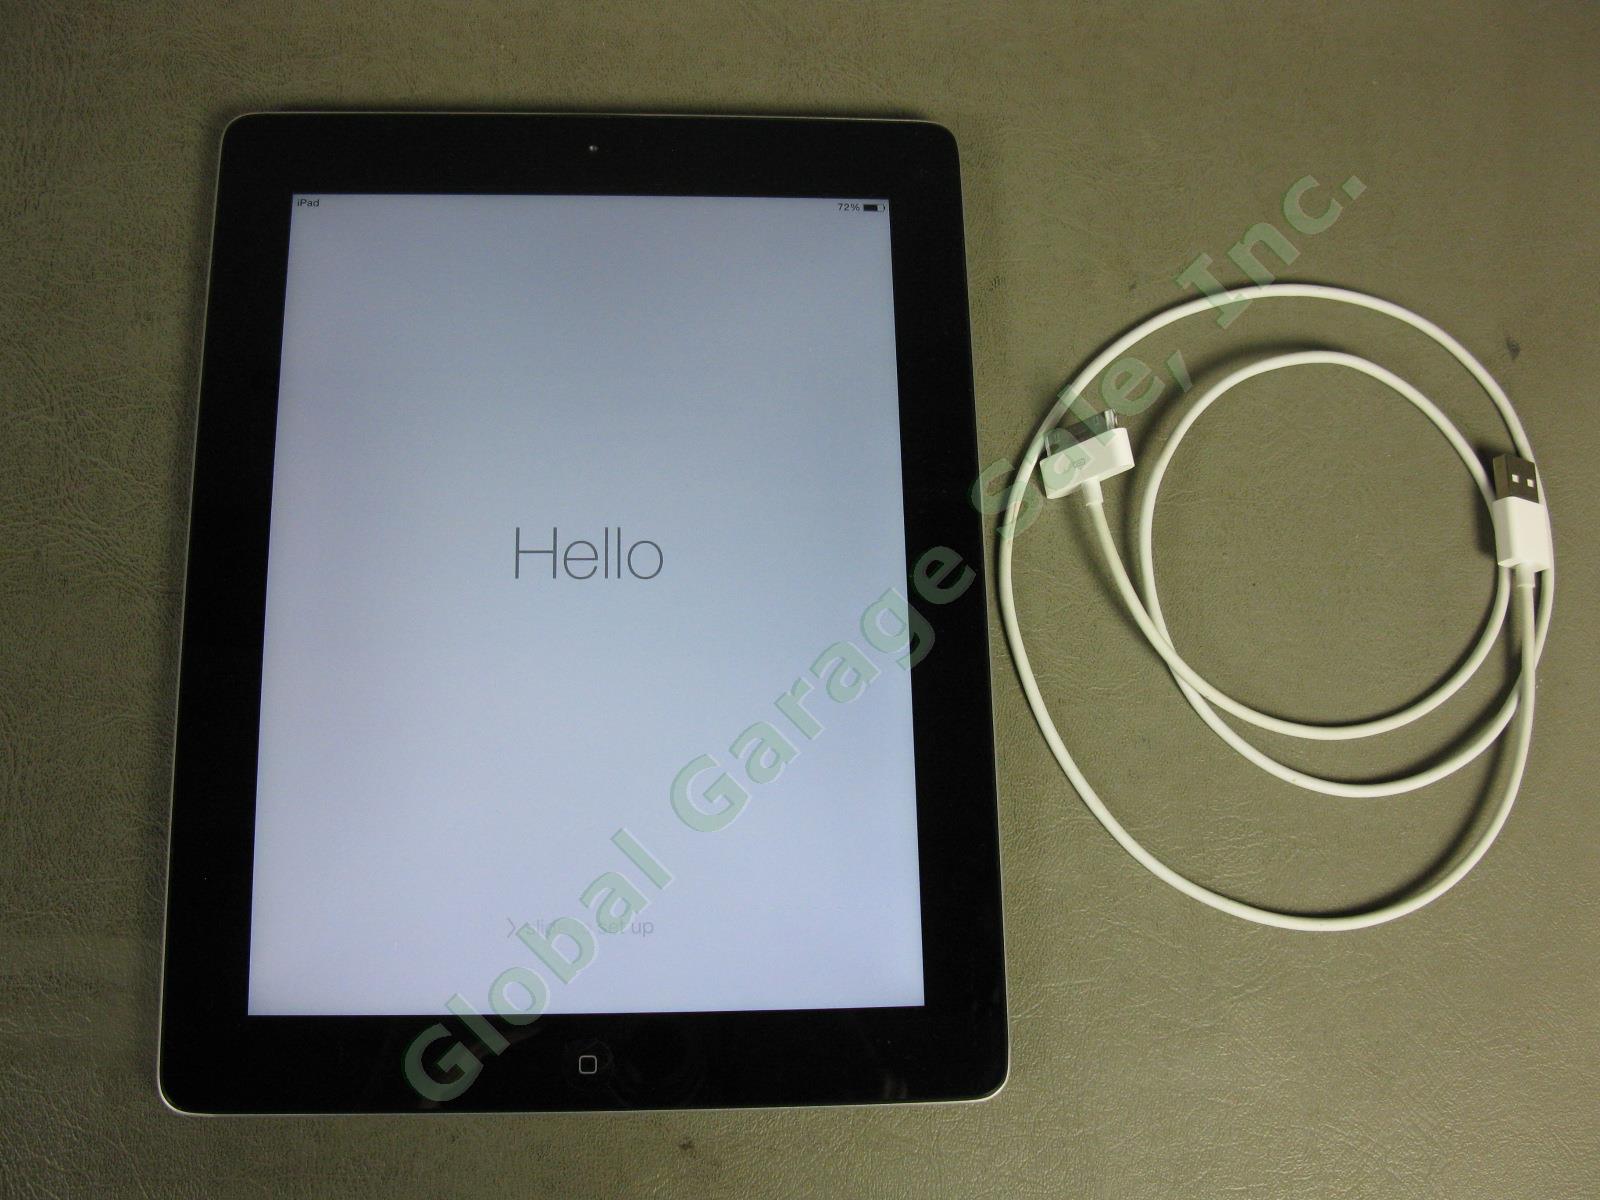 Apple iPad 3 3rd Generation Tablet A1416 MC706LL/A 32GB Wi-Fi Black Works Great